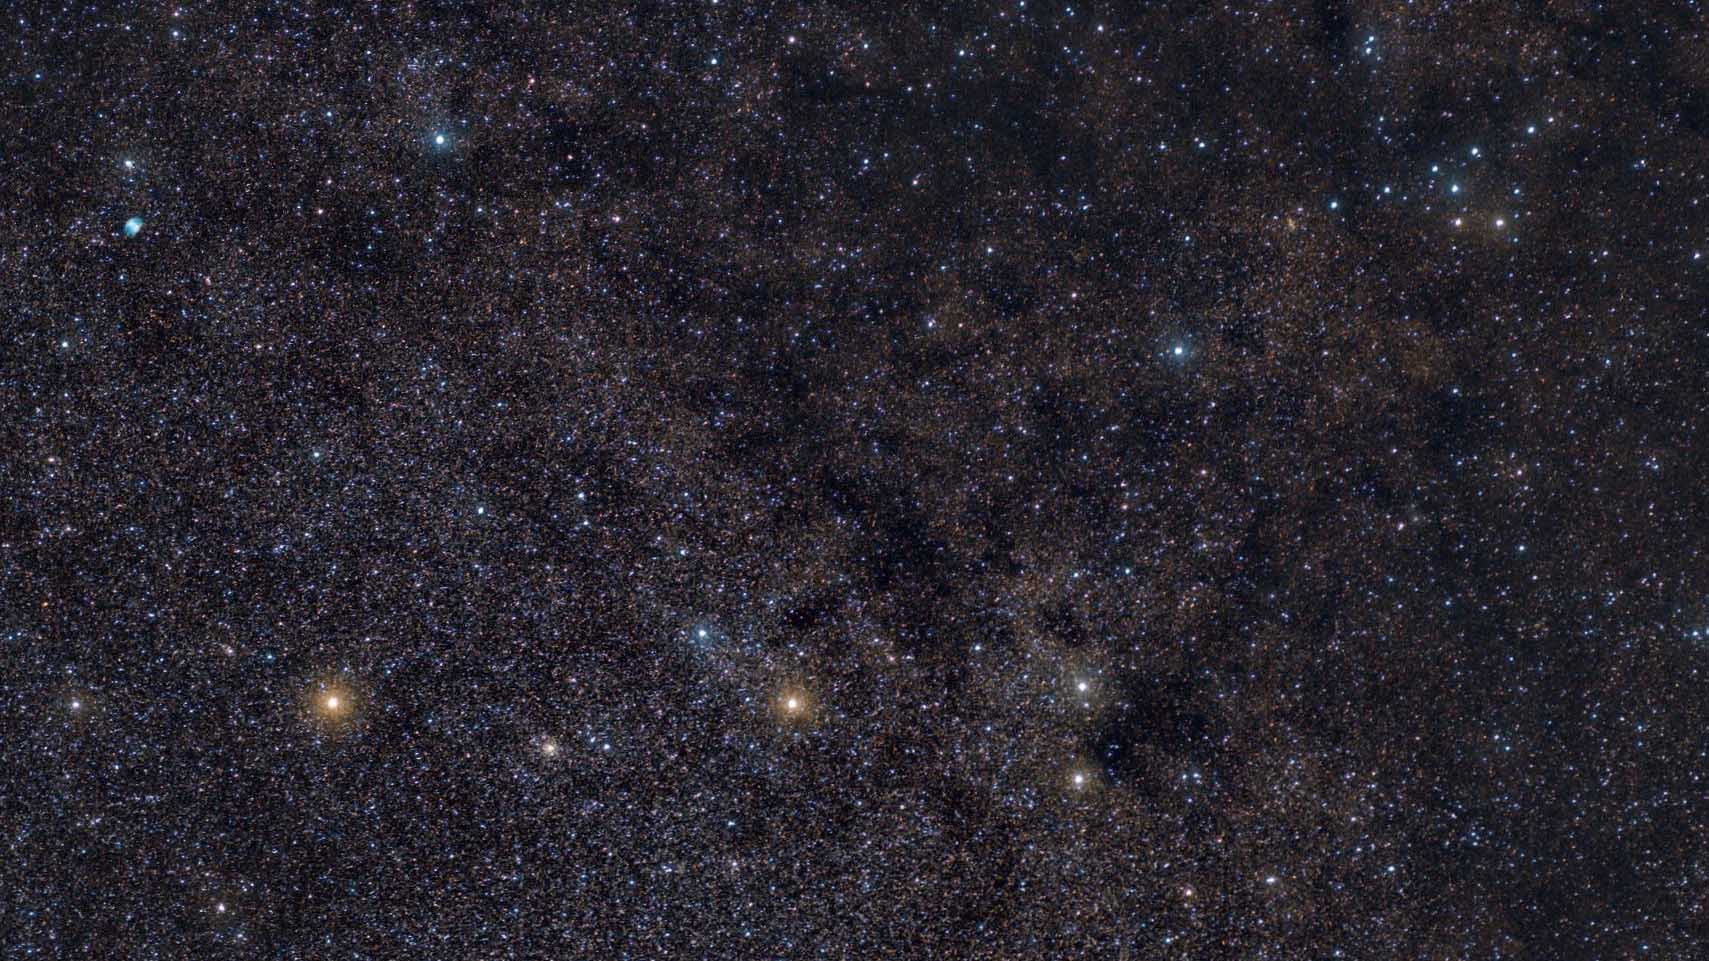 În centrul imaginii se pot vedea stelele principale ale constelației Săgeata, în zona de sus, M 27 în stânga și roiul Cuierul în dreapta. Marcus Degenkolbe